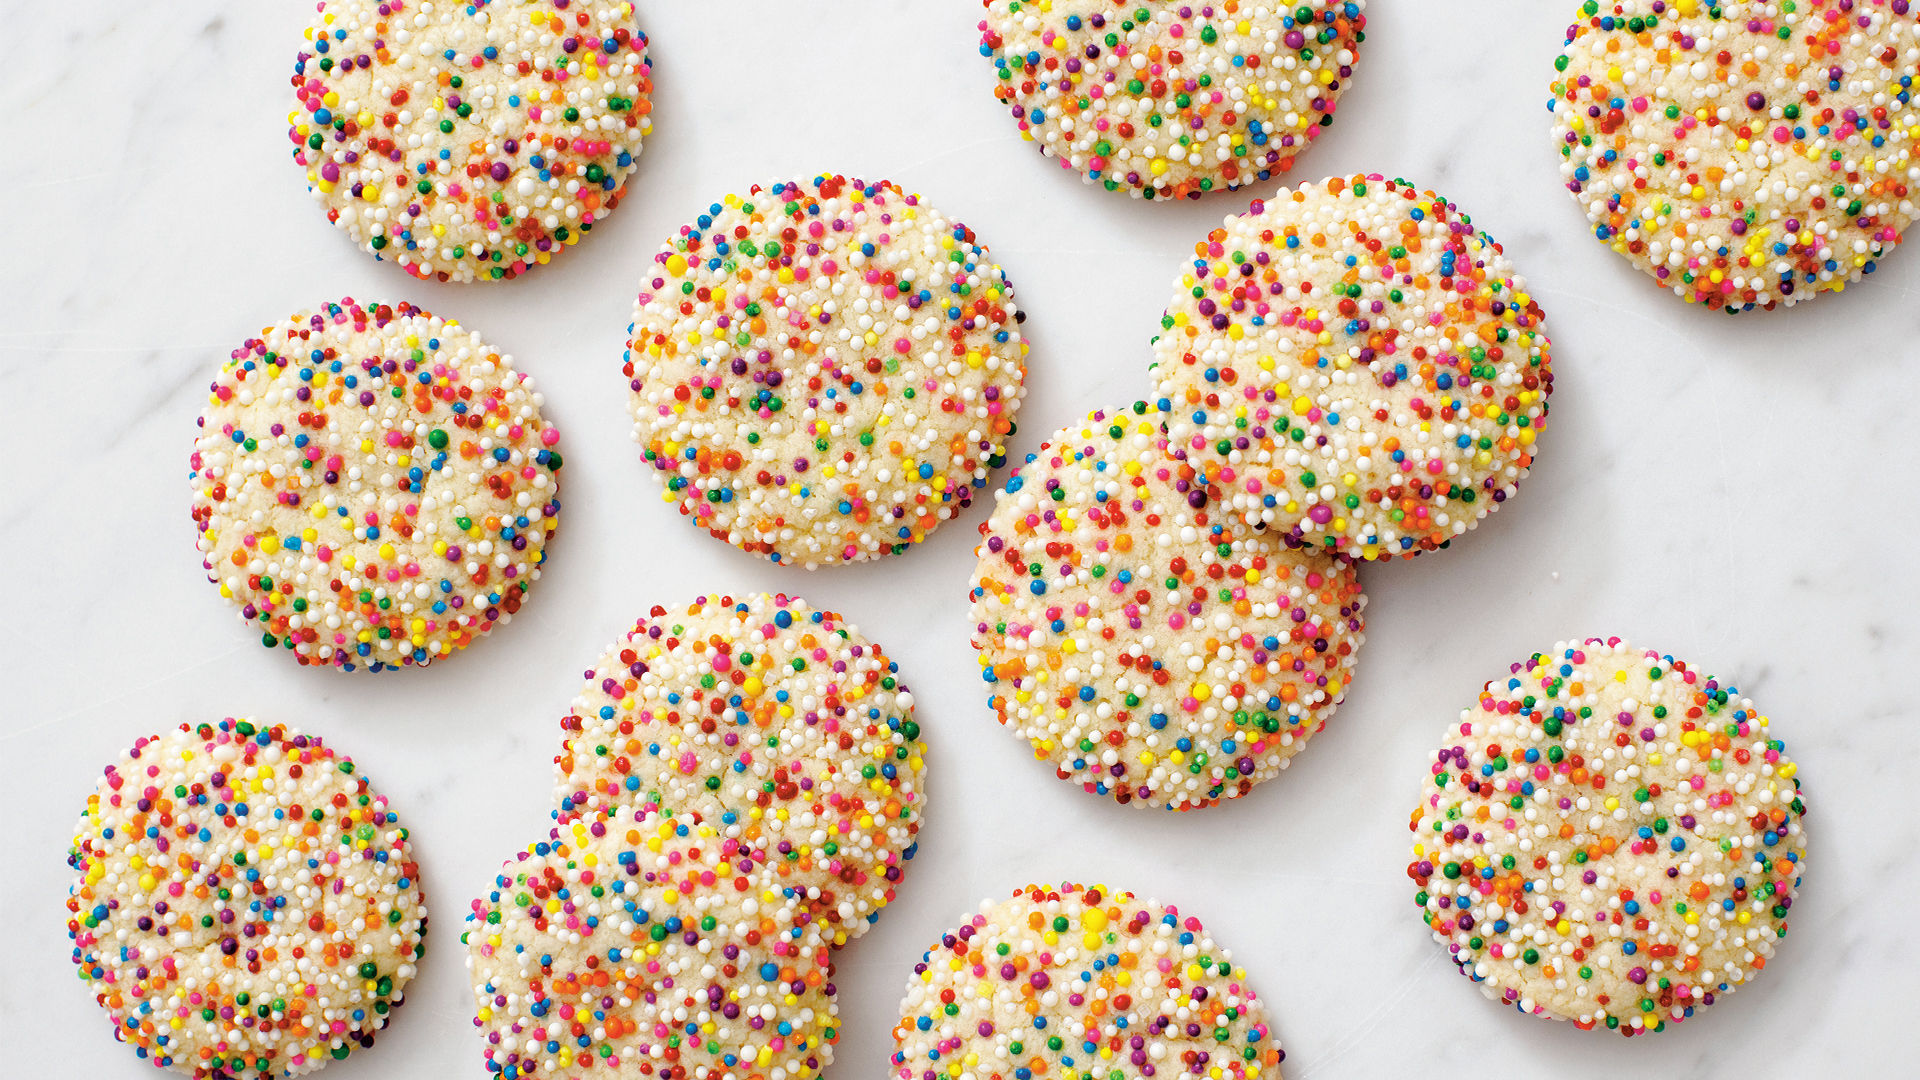 Sugar cookies with sprinkles